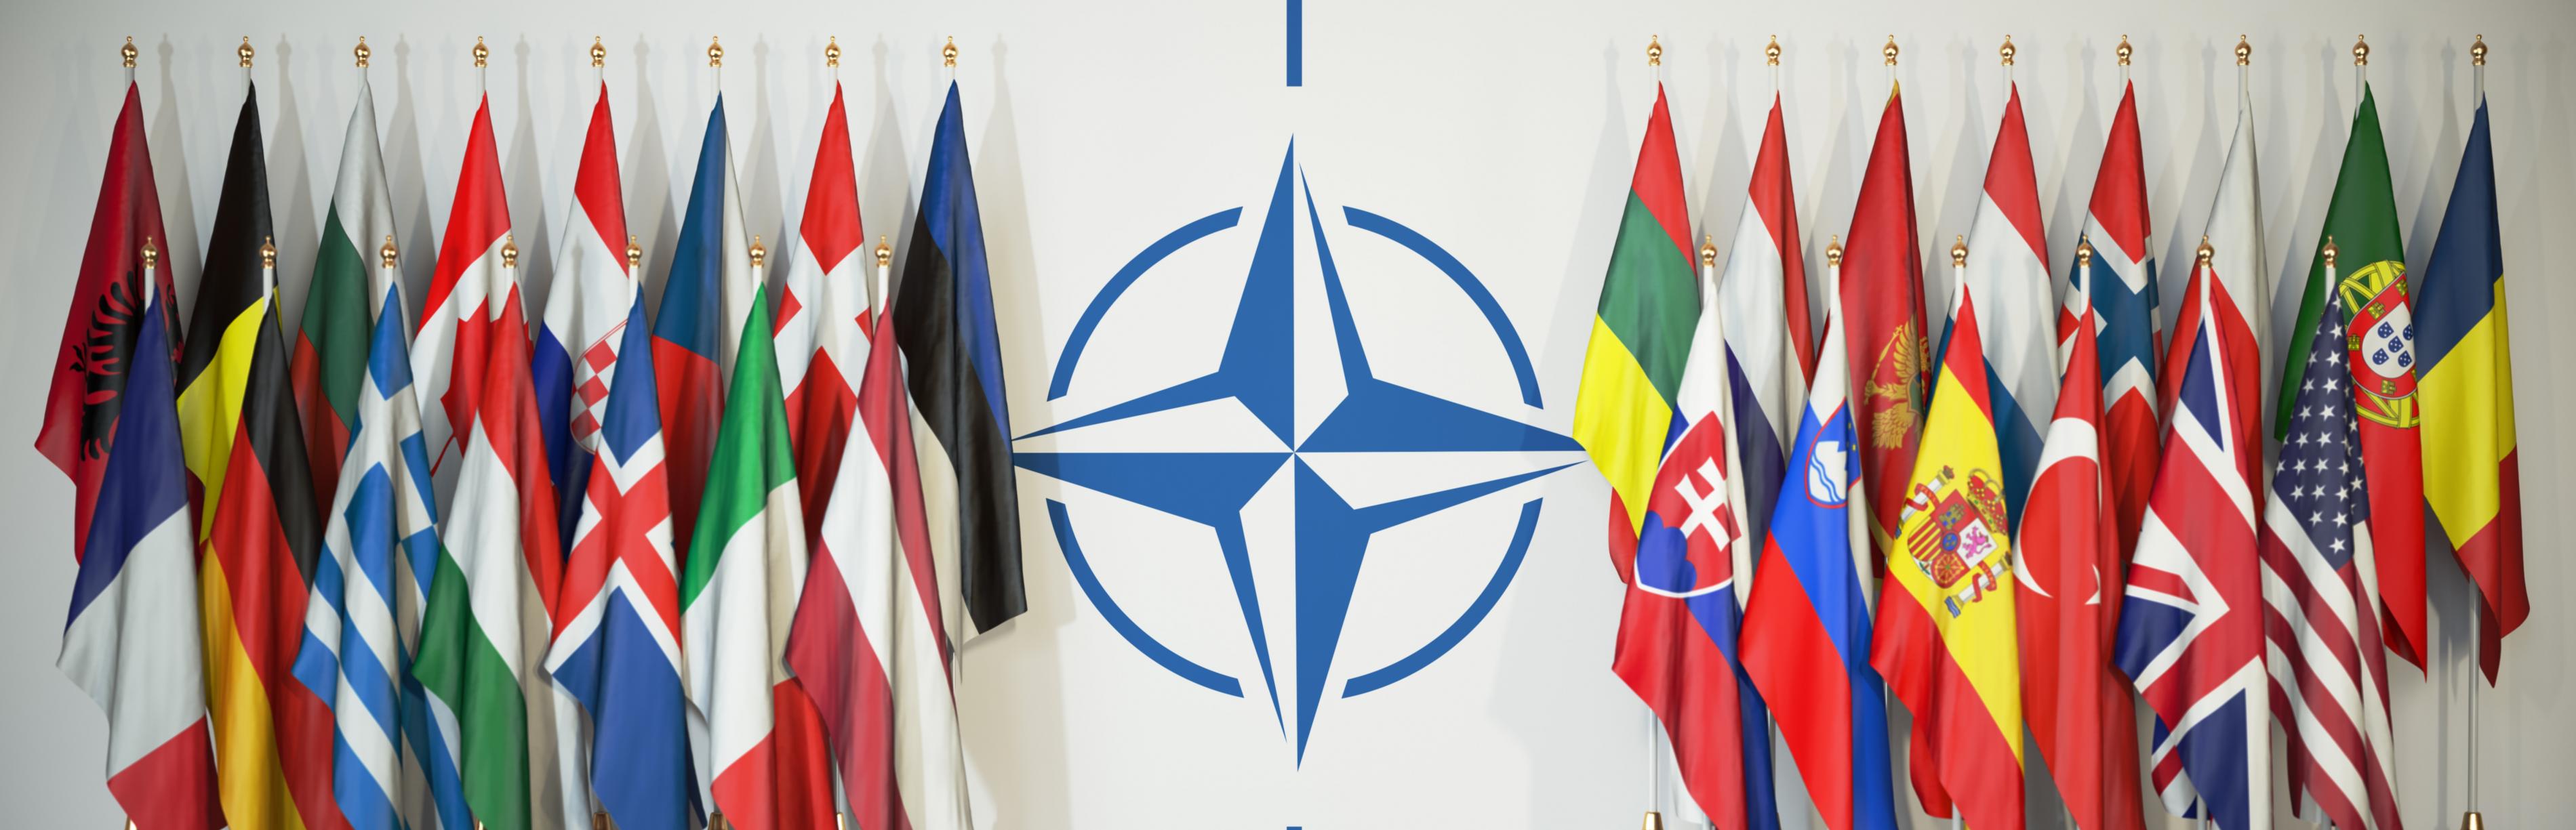 Rechts und links des NATO-Symbols sind die Fahnen der Mitgliedsstaaten zu sehen.